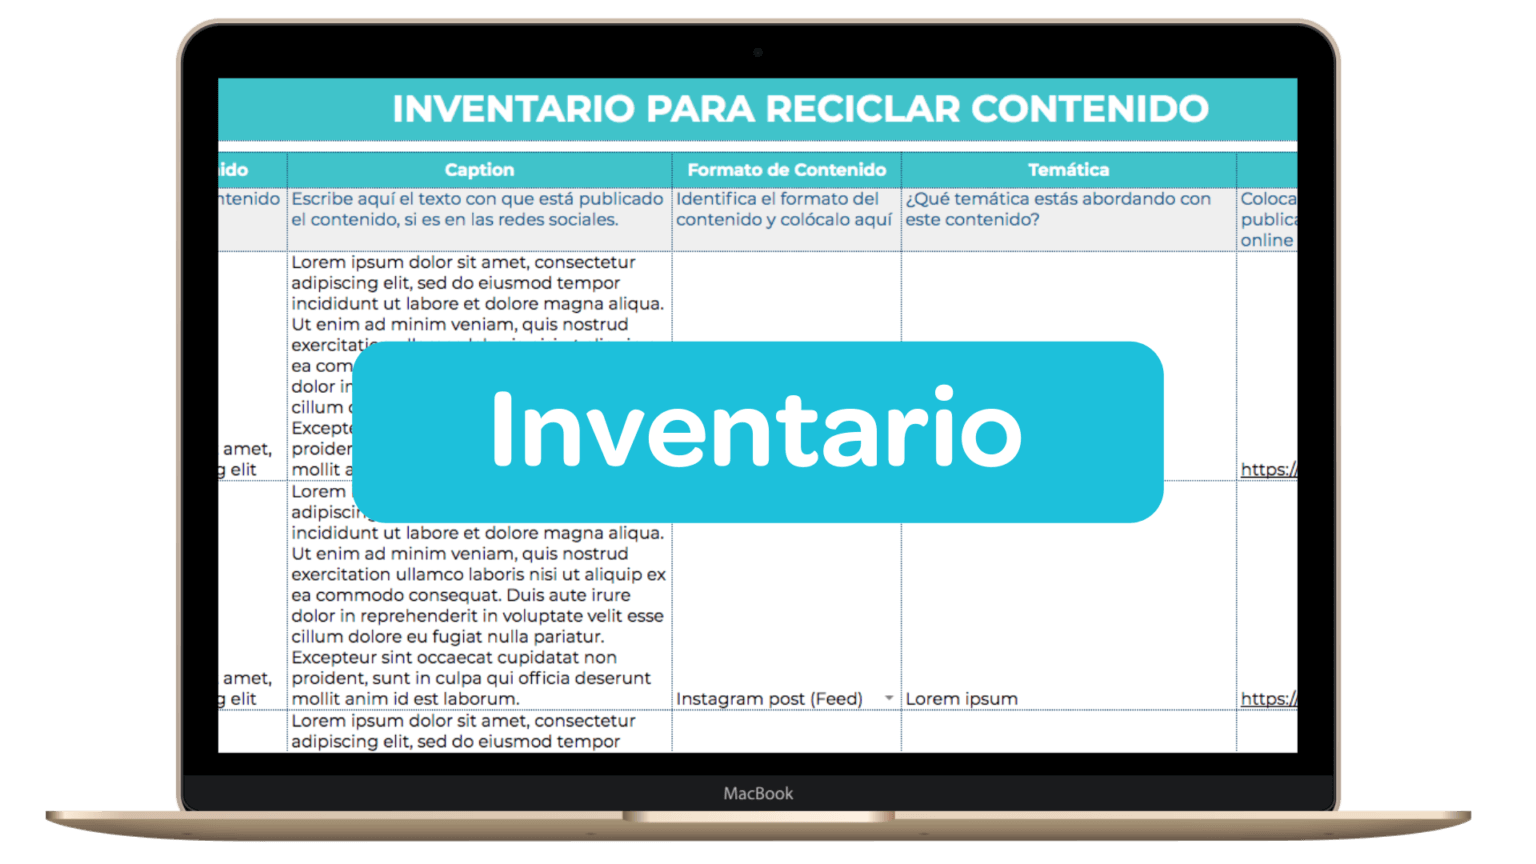 INVENTARIO-Reciclaje-Contenido-Plantilla-Mockup-1536x864